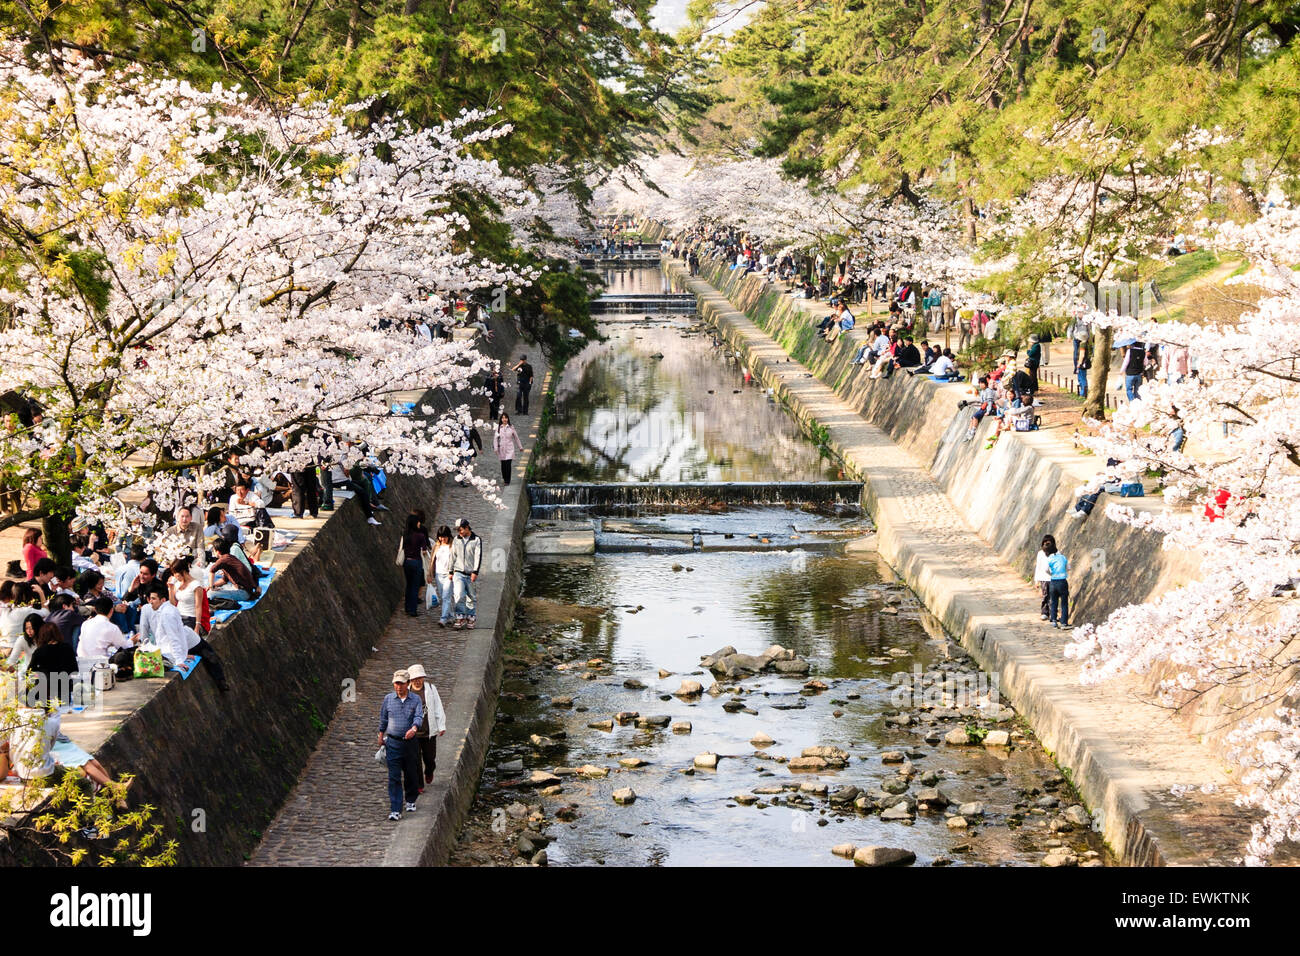 Voll Frühling Szene von Menschen zu Fuß unter Reihen von Cherry Blossom Tress, während andere Gruppen Picknick von der Shukugawa Fluss, Japan sitzen. Stockfoto